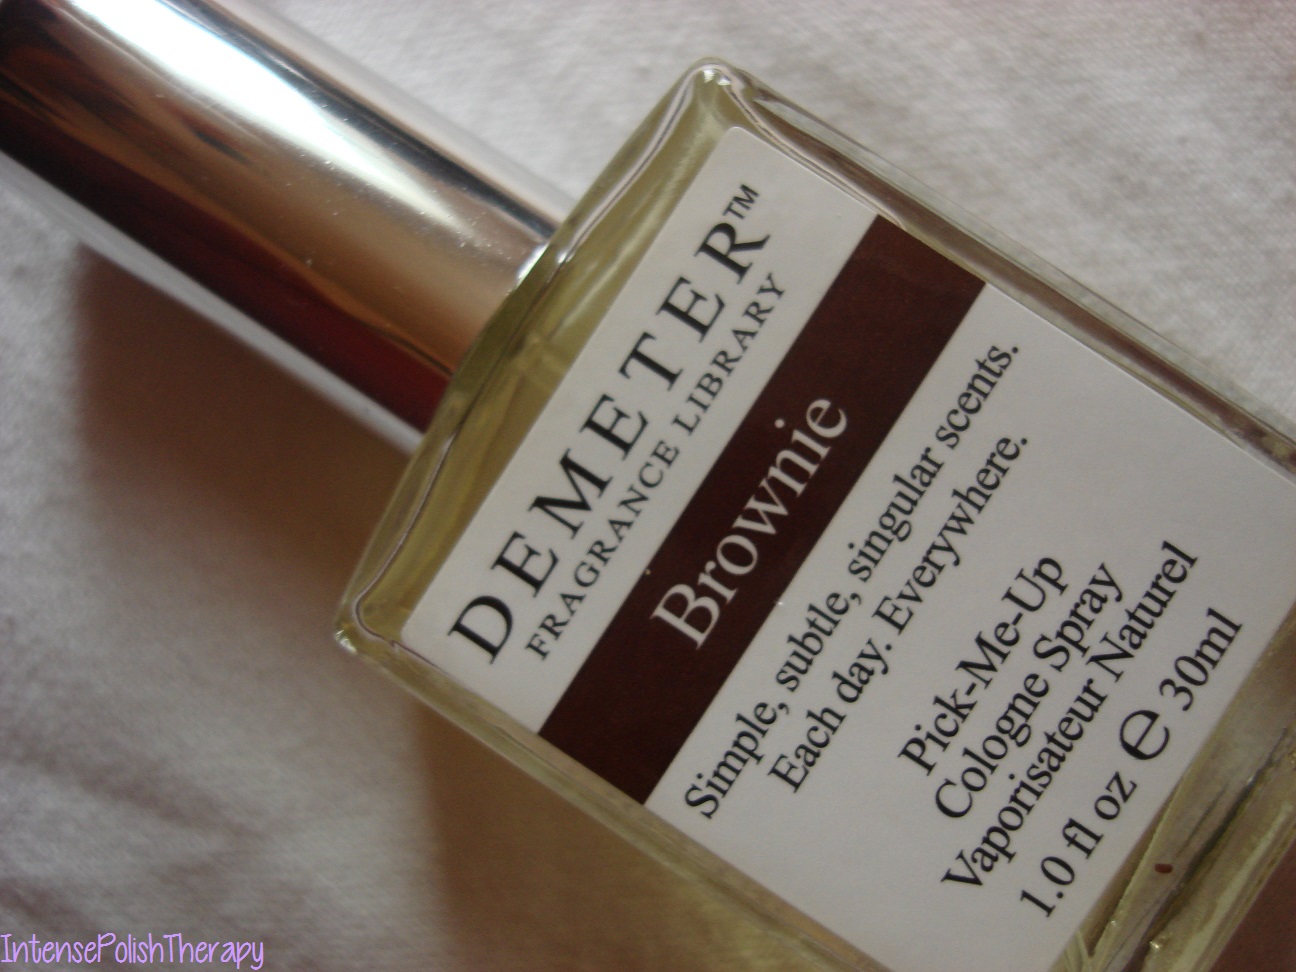 Demeter Fragrance Library - Brownie